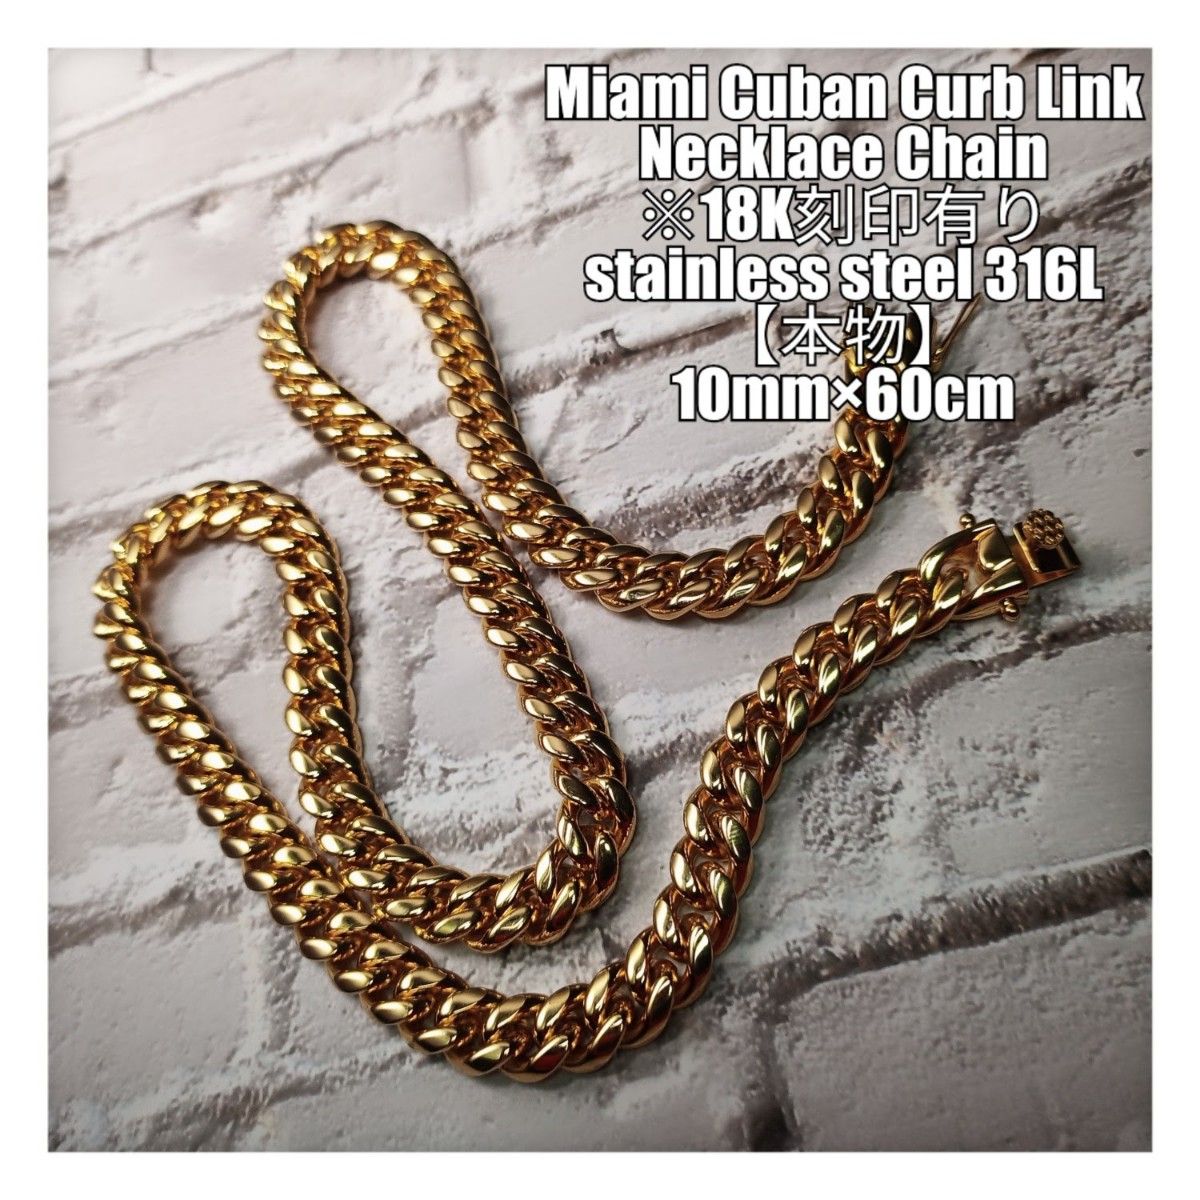 【10mm】【60cm】【18K刻印あり】【Miami Cuban Curb Link】